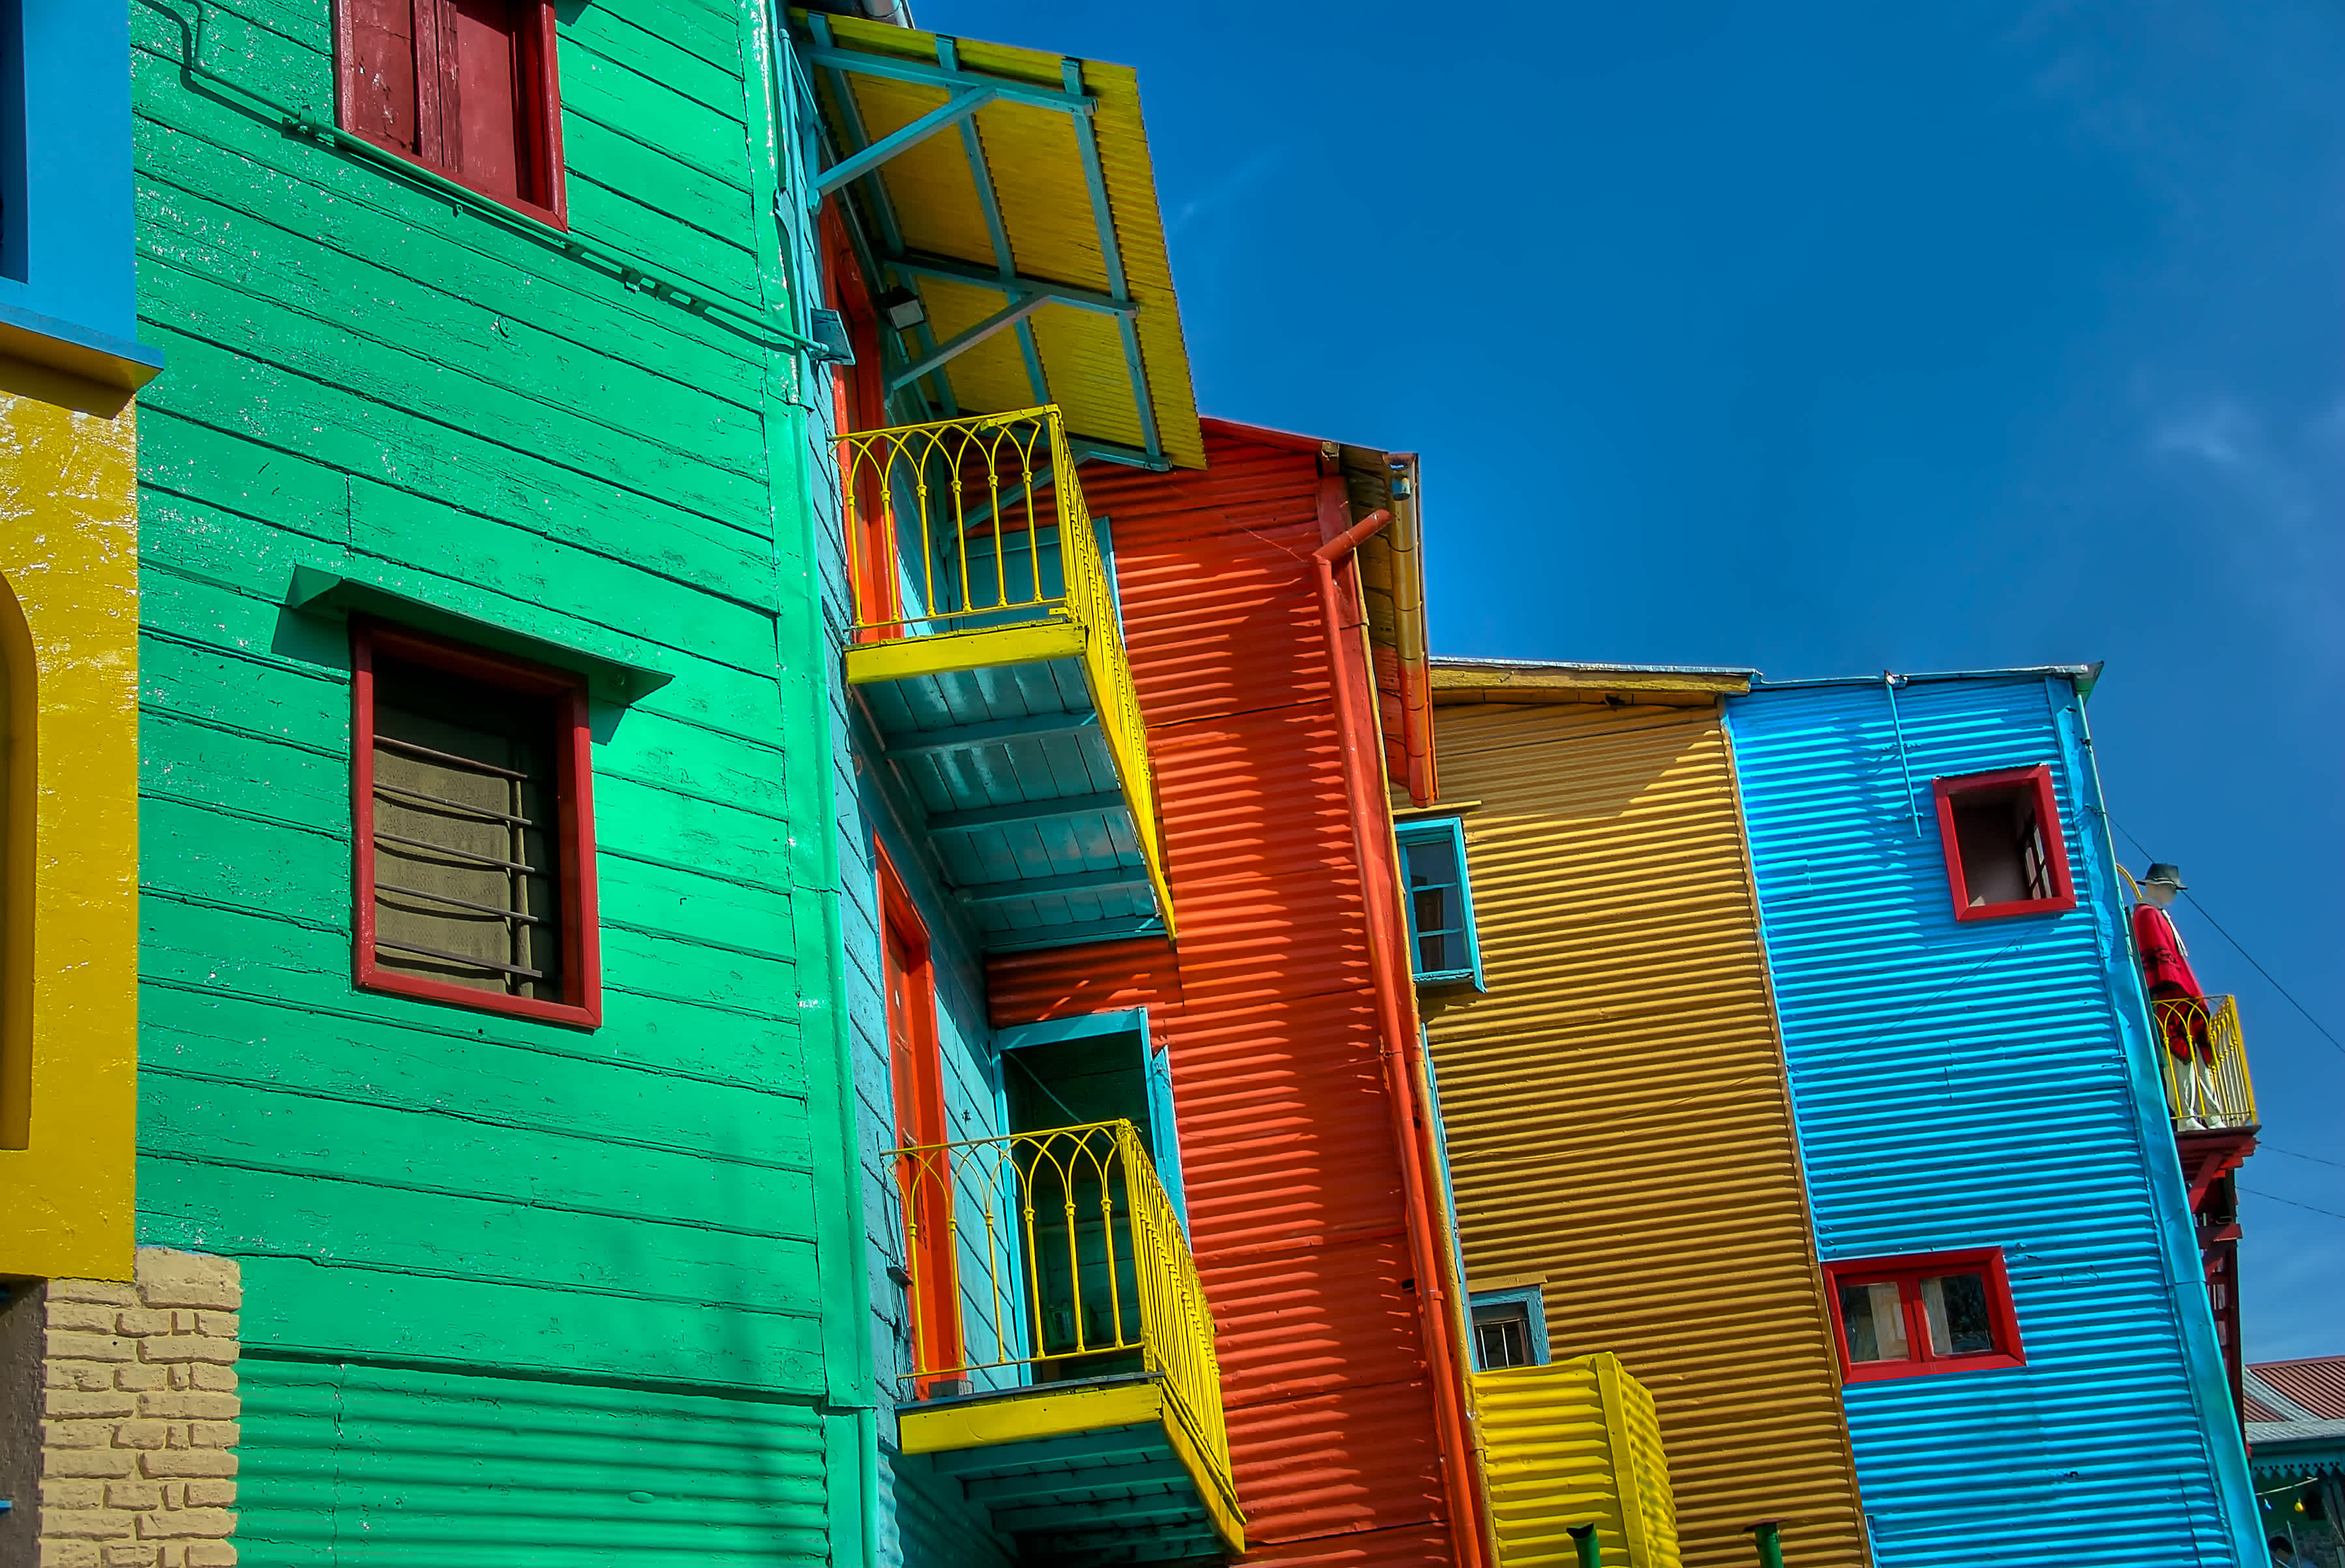 Die Straße Caminito in La Boca, ein für seine bunten Häuser berühmtes Viertel in Buenos Aires